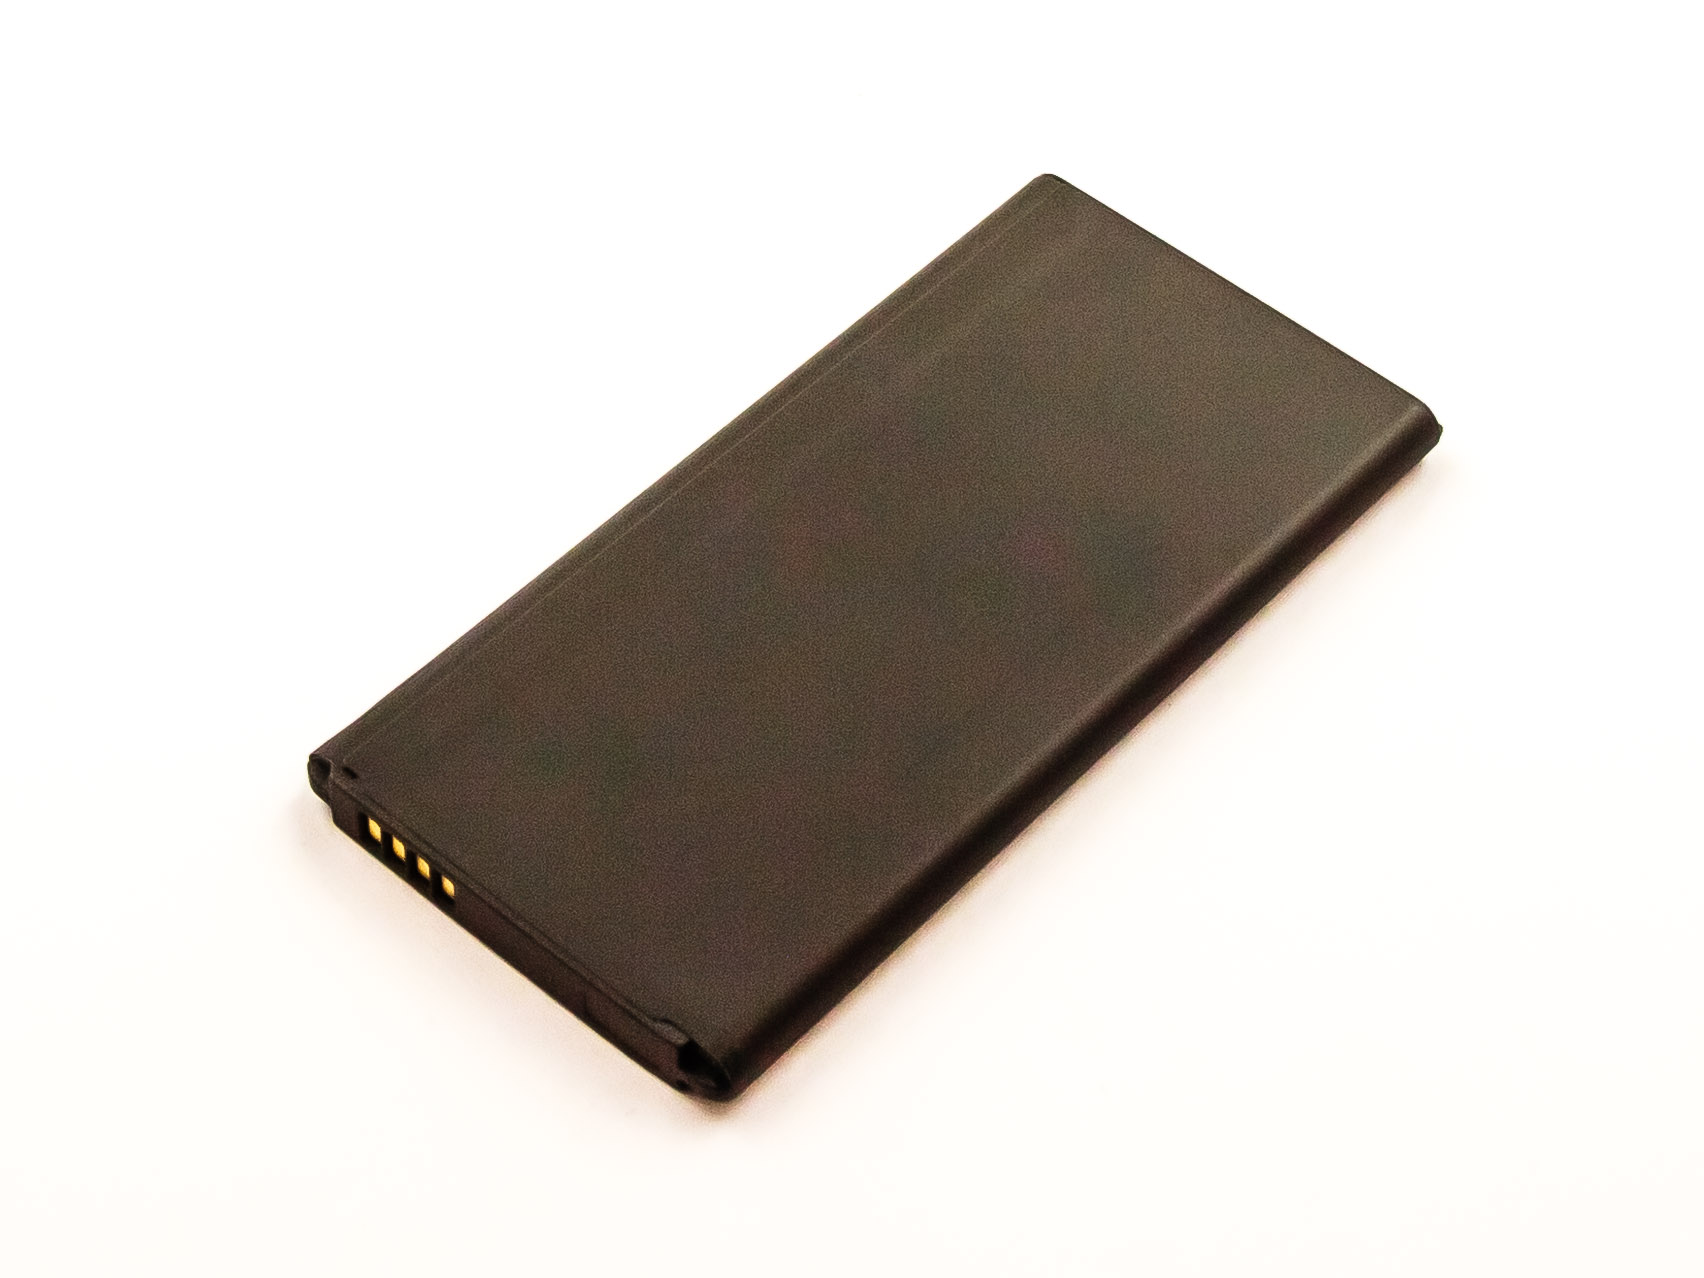 AGI Akku kompatibel mit Handy-/Smartphoneakku, Li-Ion, mAh 2800 Volt, Li-Ion S5 3.85 Galaxy Samsung LTE